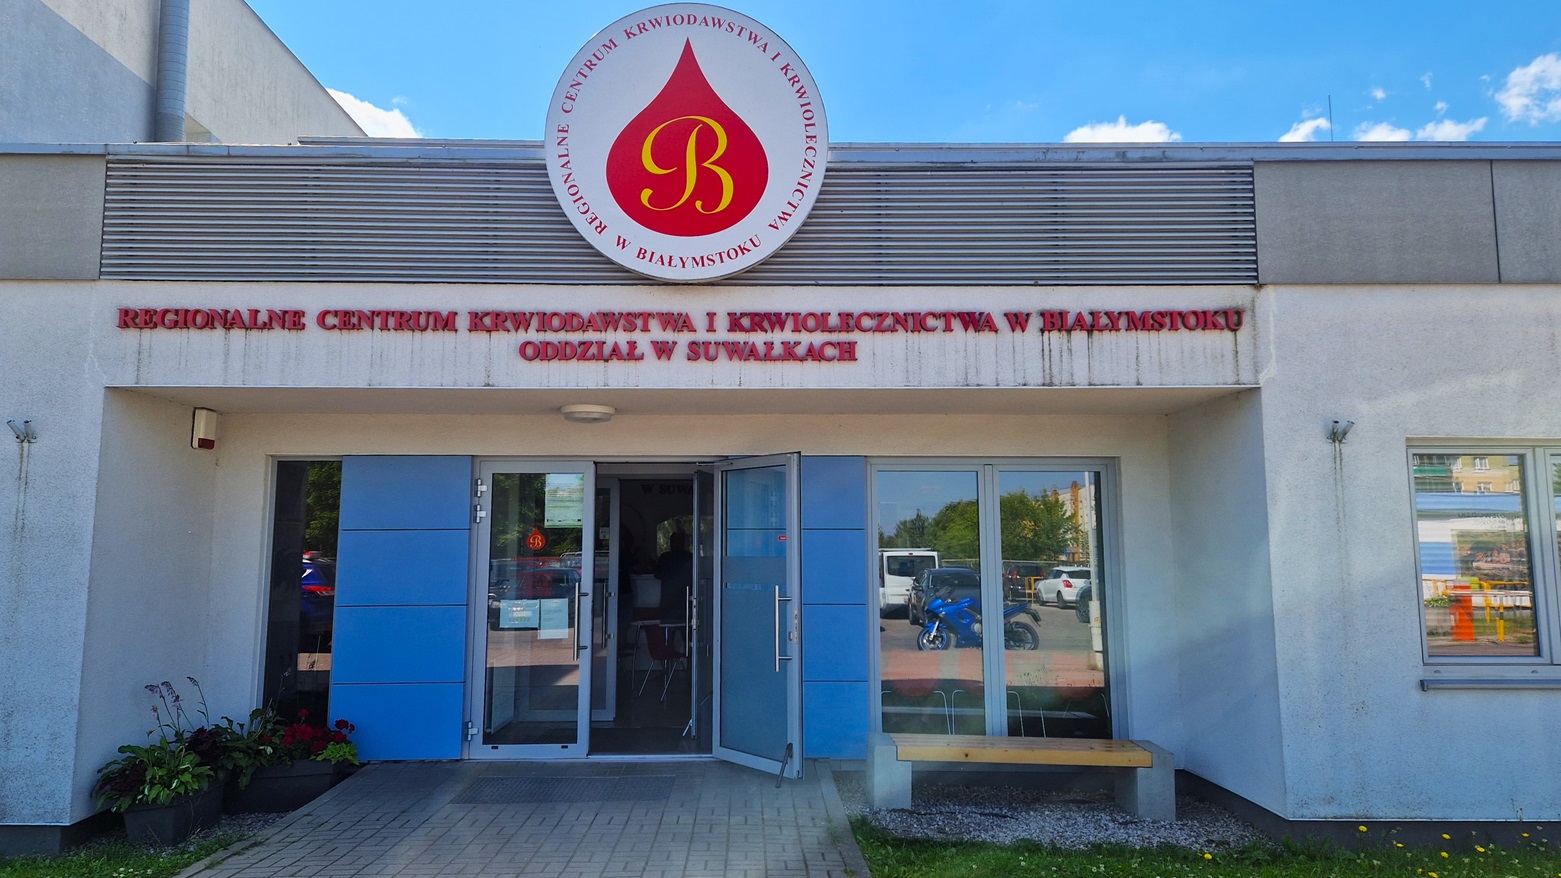 Regionalne Centrum Krwiodawstwa i Krwiolecznictwa w Białymstoku Oddział w Suwałkach